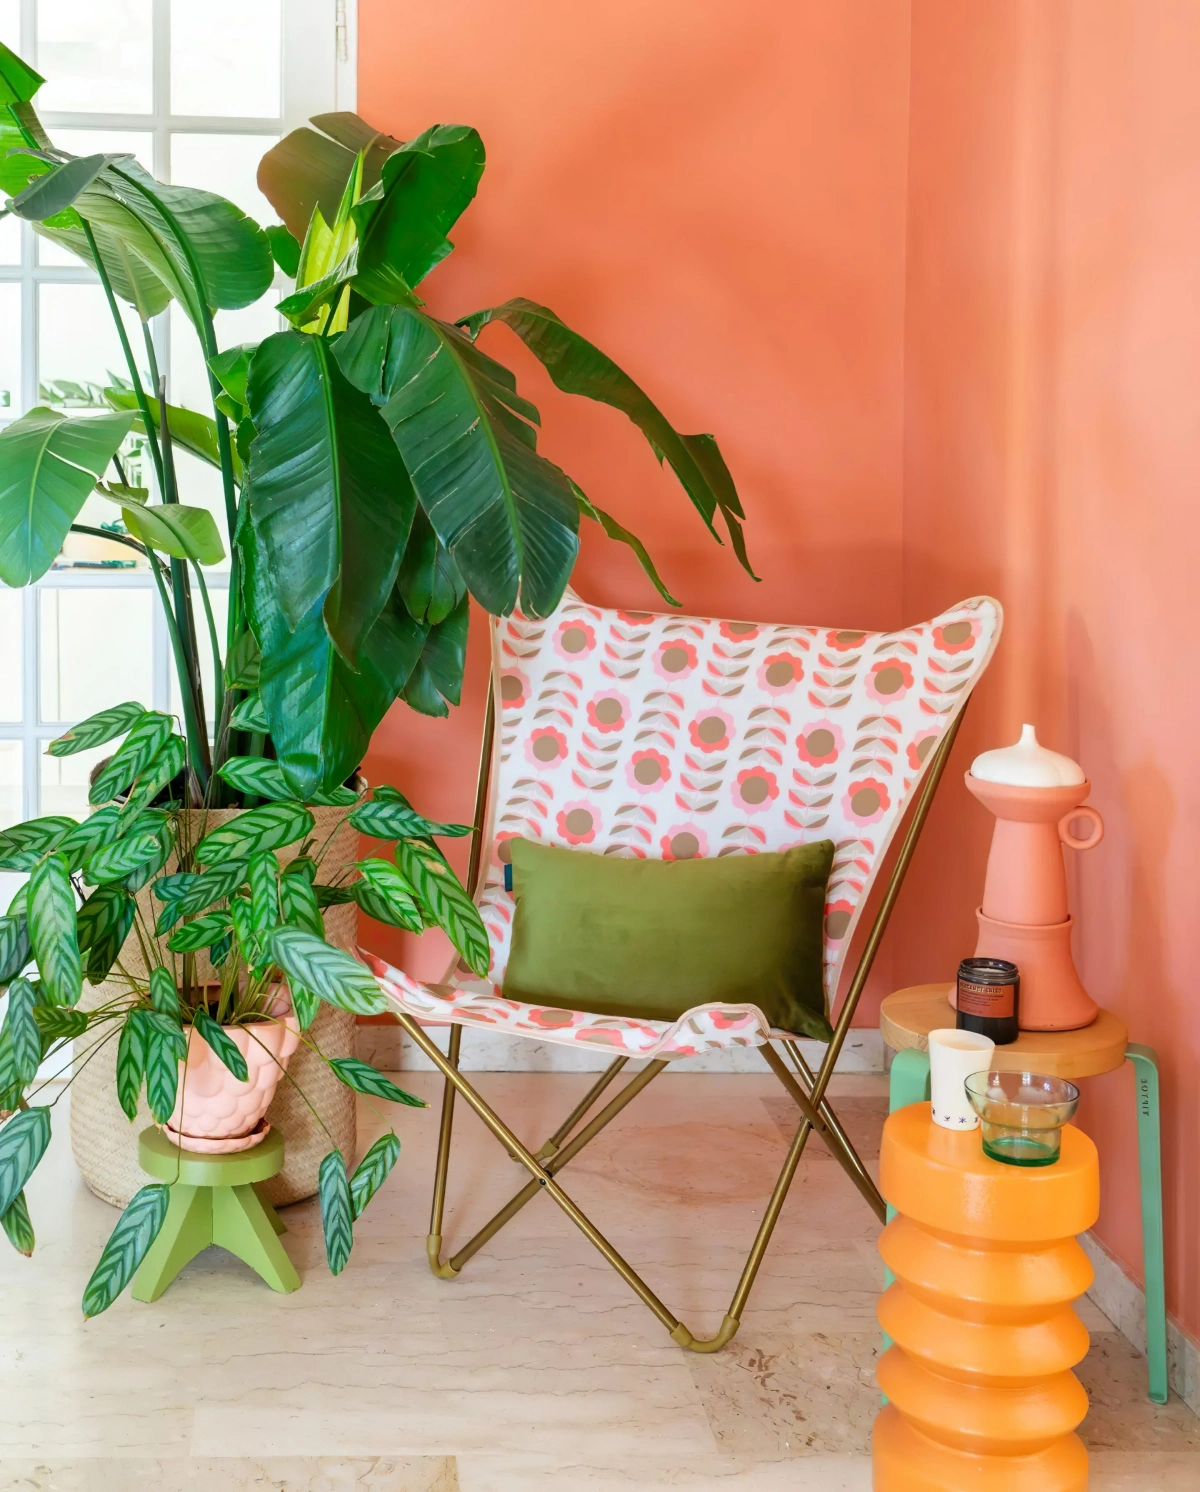 decoration chambre nature zen plante verte panier fibre vegetale chaise